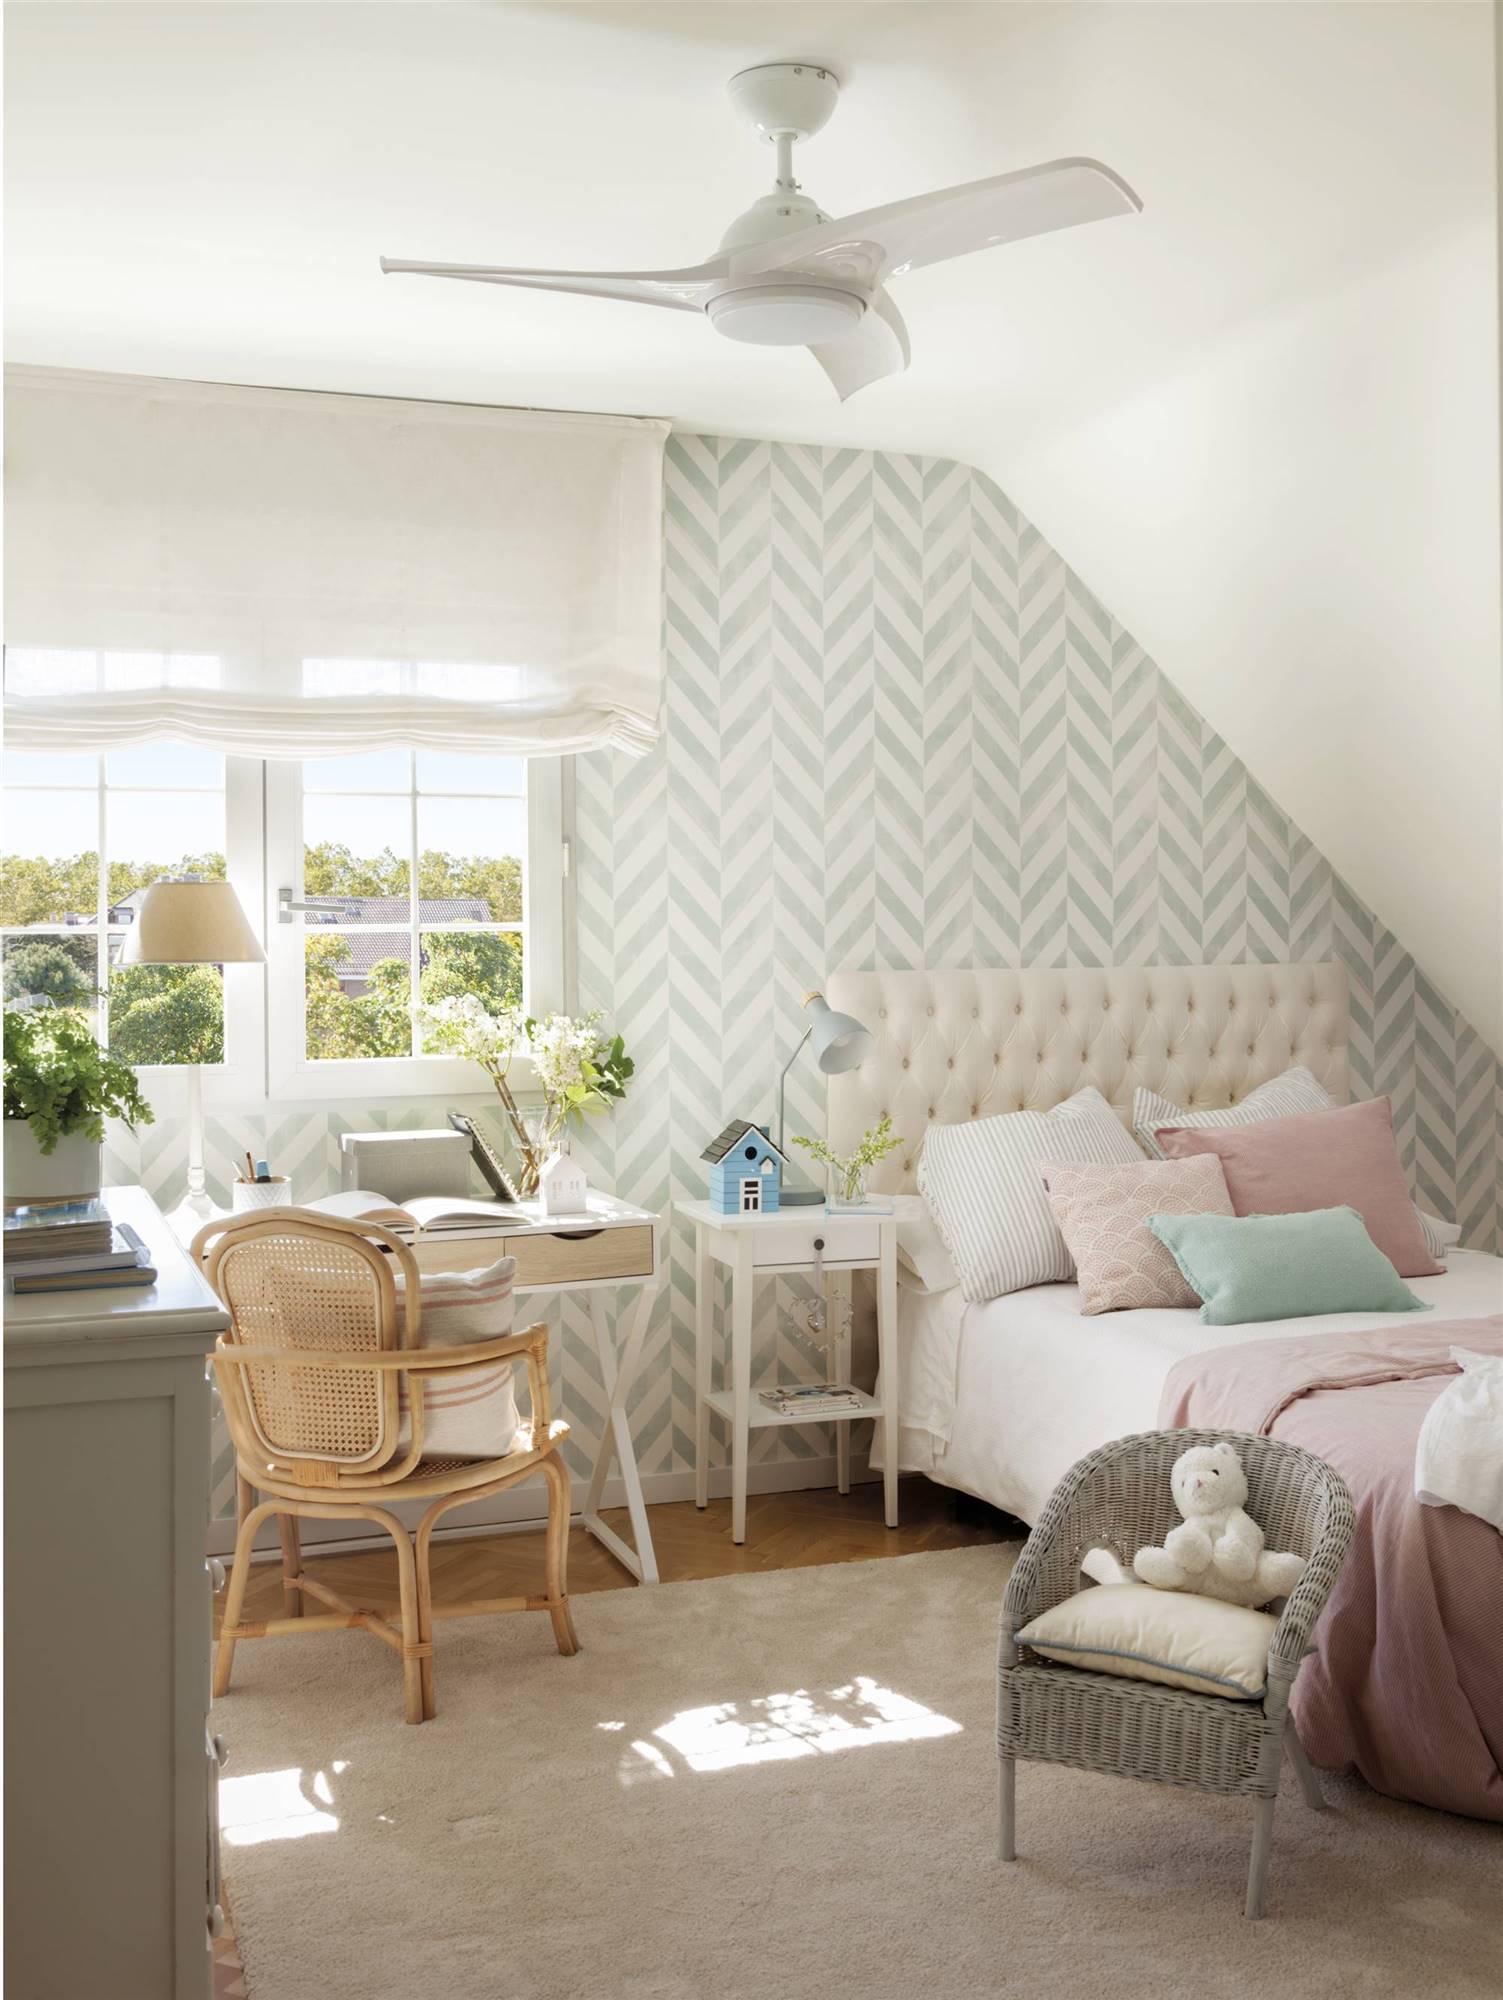 Dormitorio infantil decorado con papel pintado geome��trico azul y blanco.